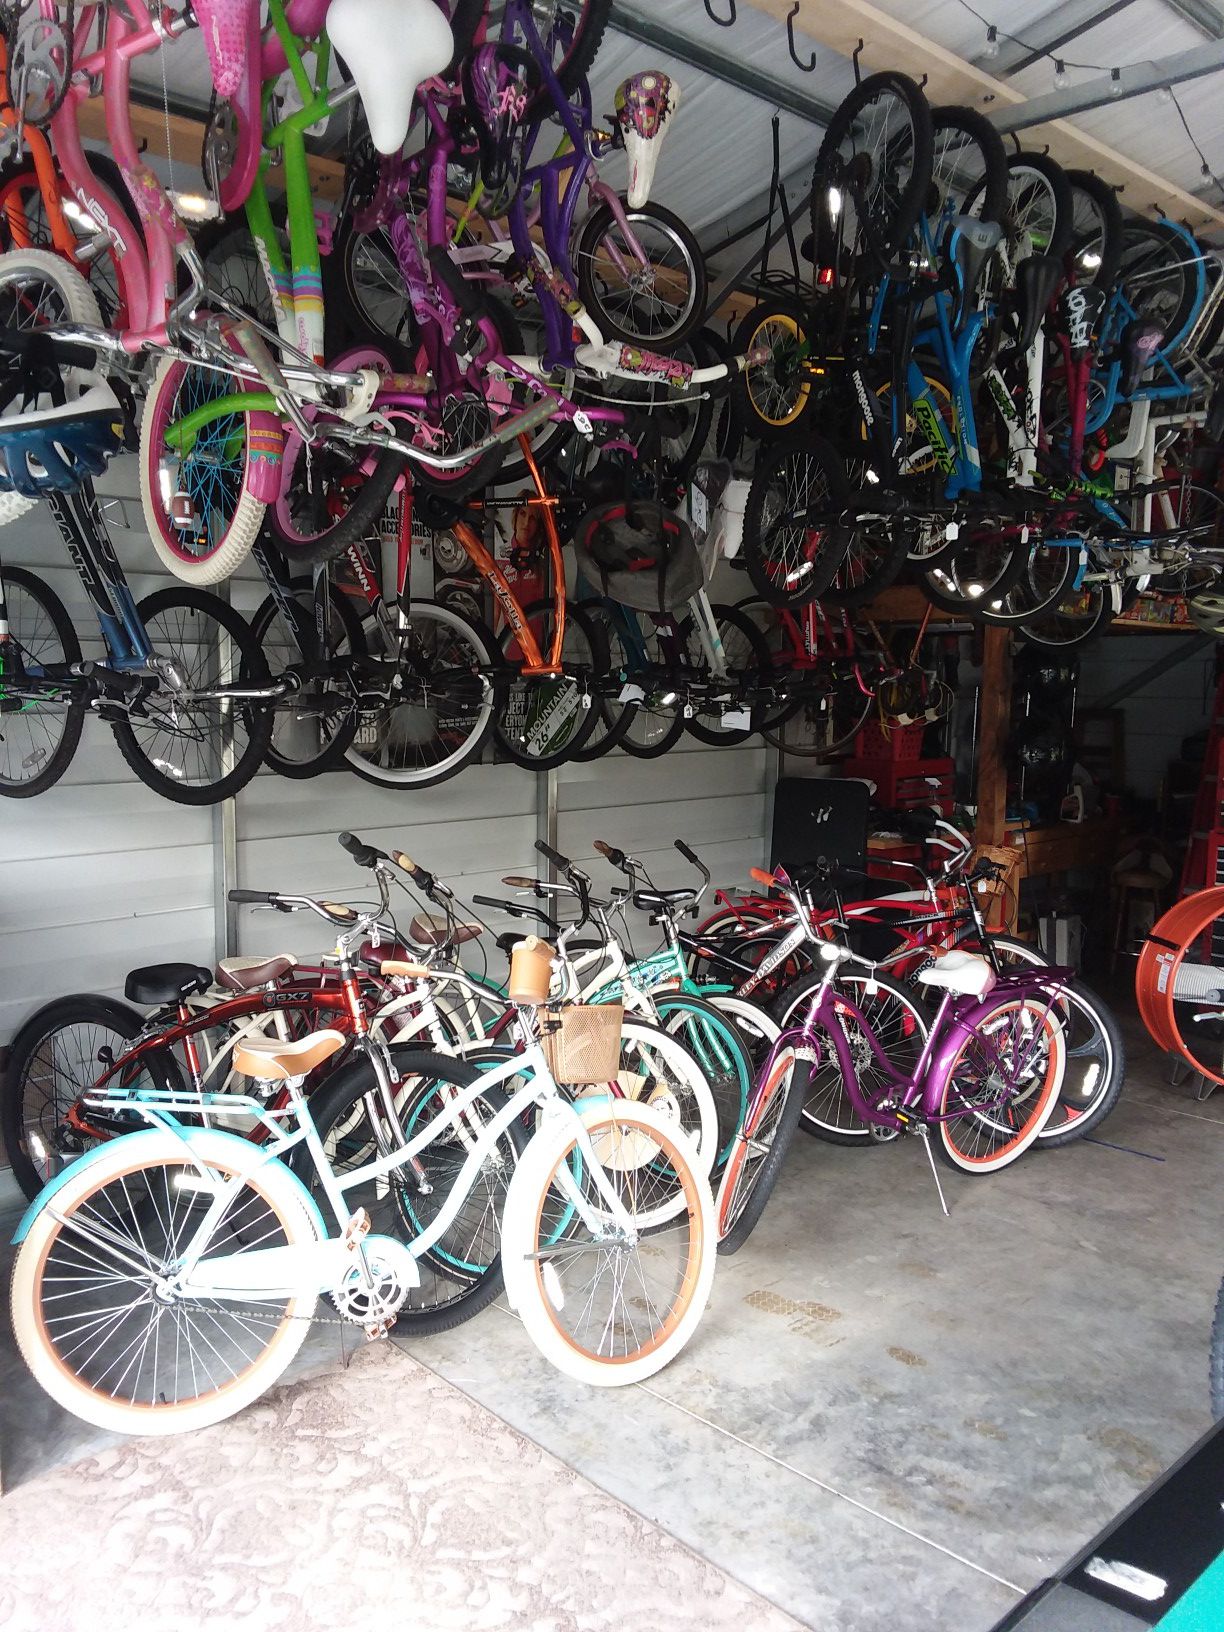 Bikes bikes bikes. 29inch 27.5 inch 26inch. 24 inch